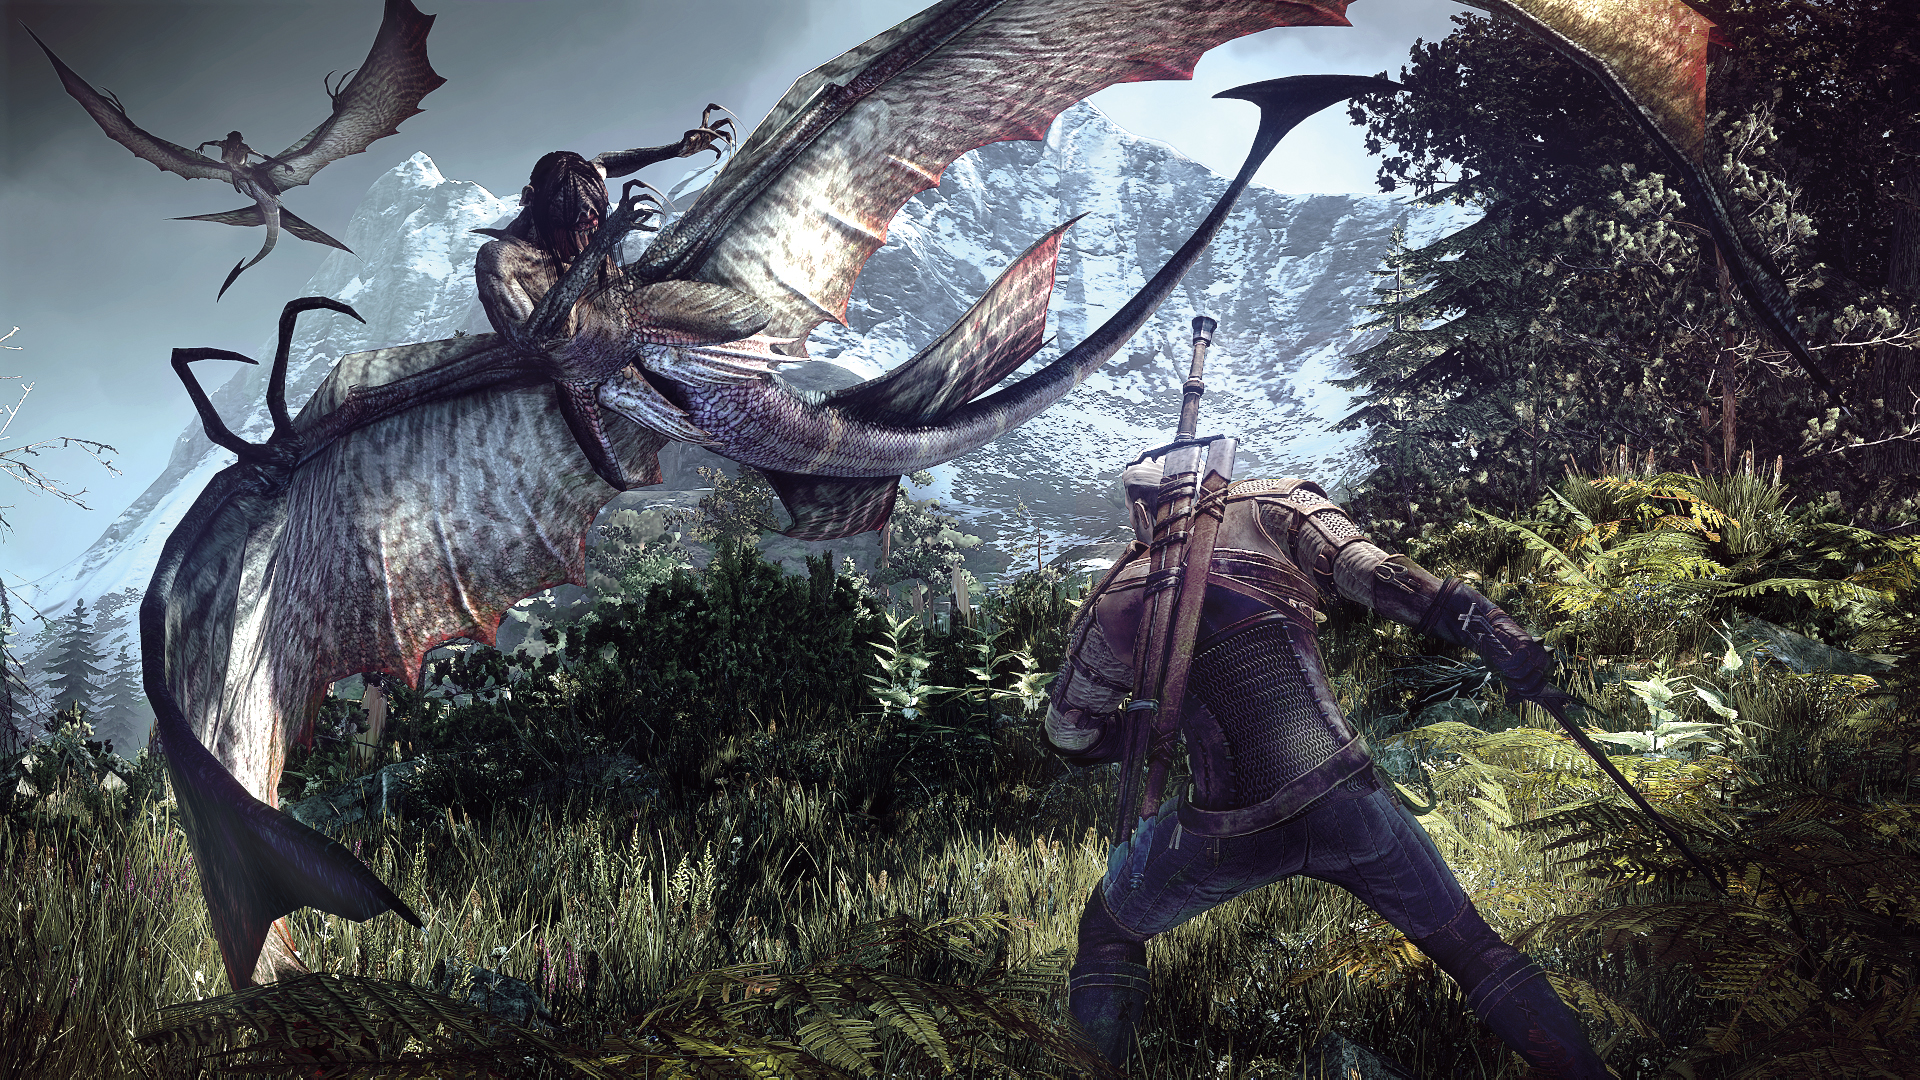 Requisitos mínimos para rodar The Witcher 3: Wild Hunt no PC